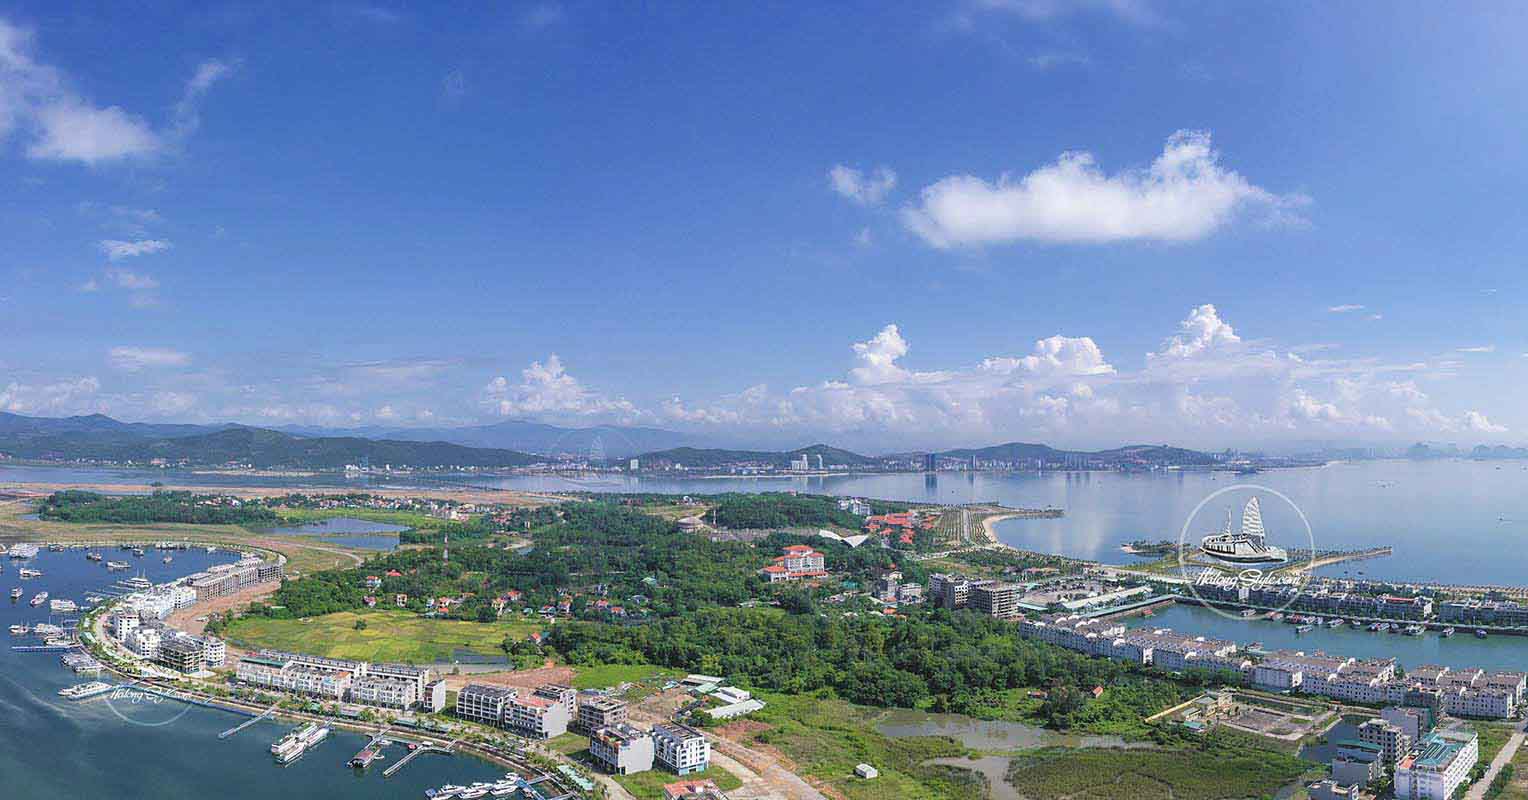 Toàn cảnh Cảng tàu quốc tế Tuần Châu nhìn từ trên cao. Ảnh: halongstyle